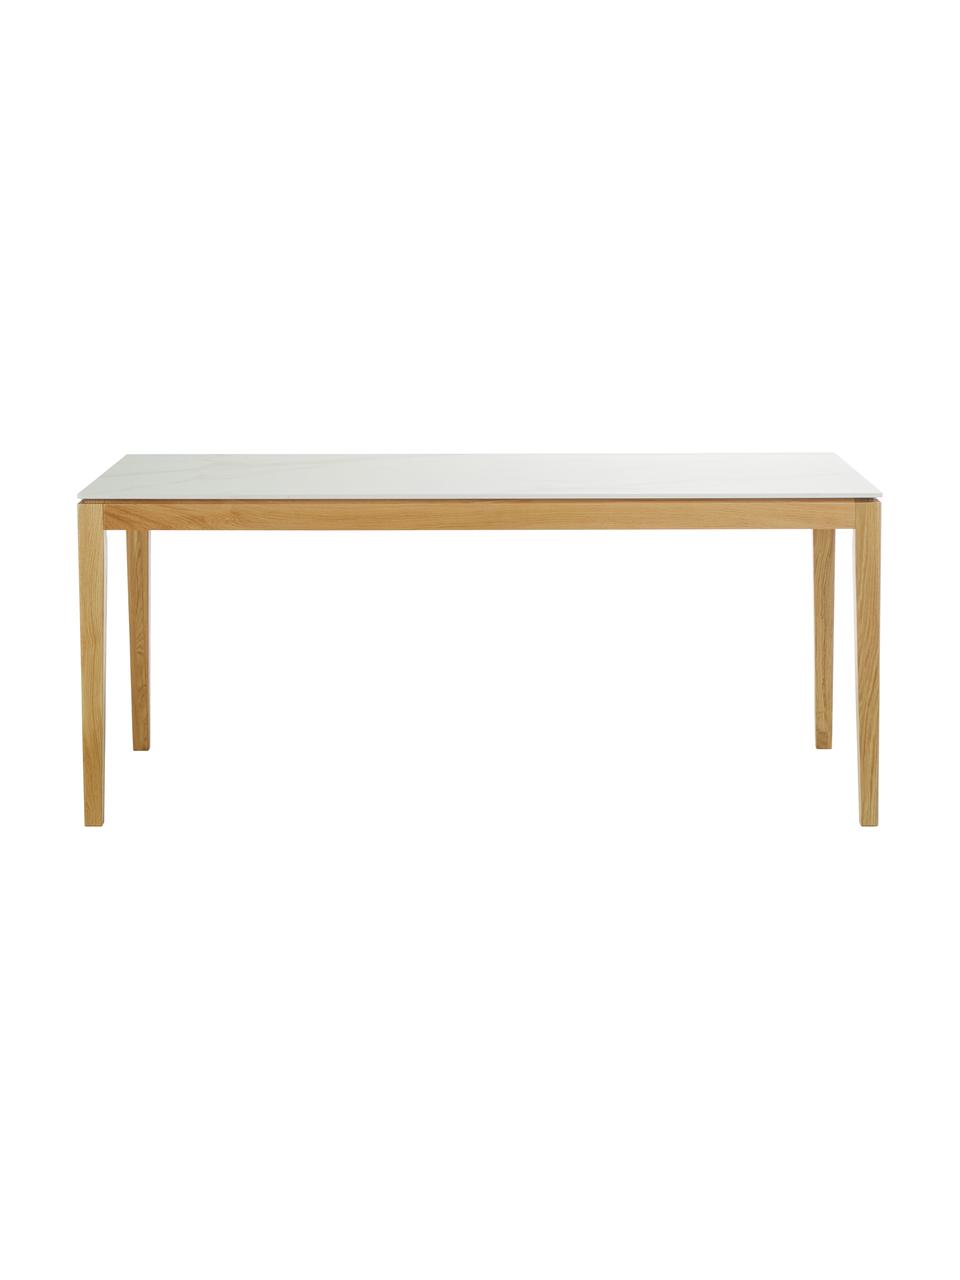 Esstisch Jackson mit Tischplatte in Marmor-Optik, verschiedene Größen, Tischplatte: Keramikstein, Marmor-Optik Weiß, Eichenholz lackiert, B 180 x T 90 cm